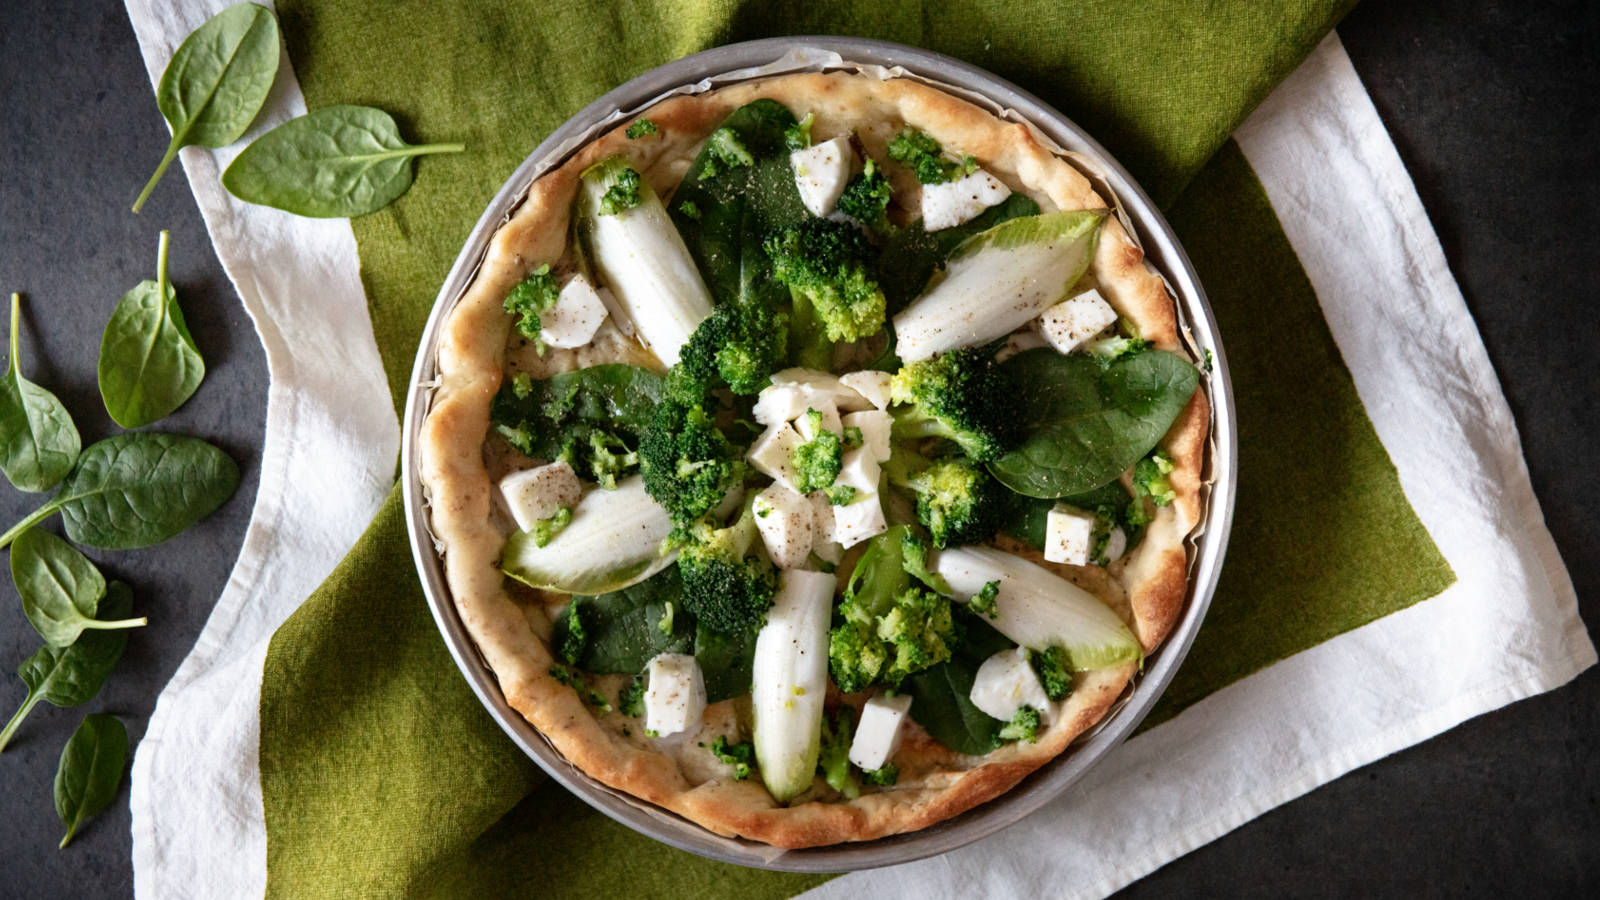 Pizza integrale con mozzarella cruda, broccoli, indivia e spinaci